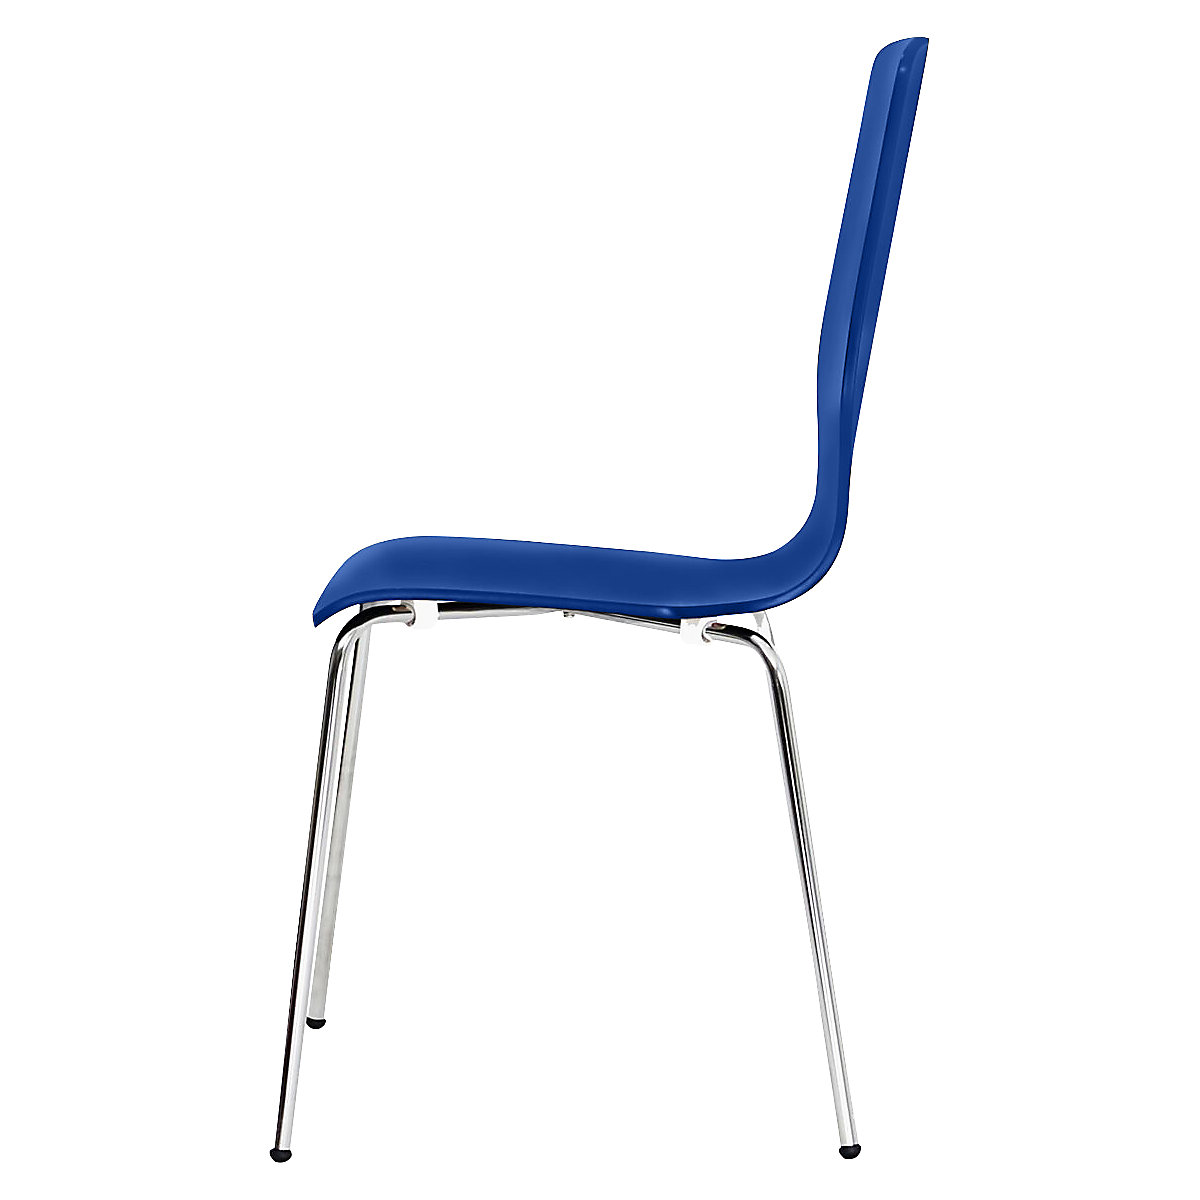 Dřevěná skořepinová židle, v x š x h 850 x 400 x 520 mm, bal.j. 4 ks, skořepina sedáku modrá